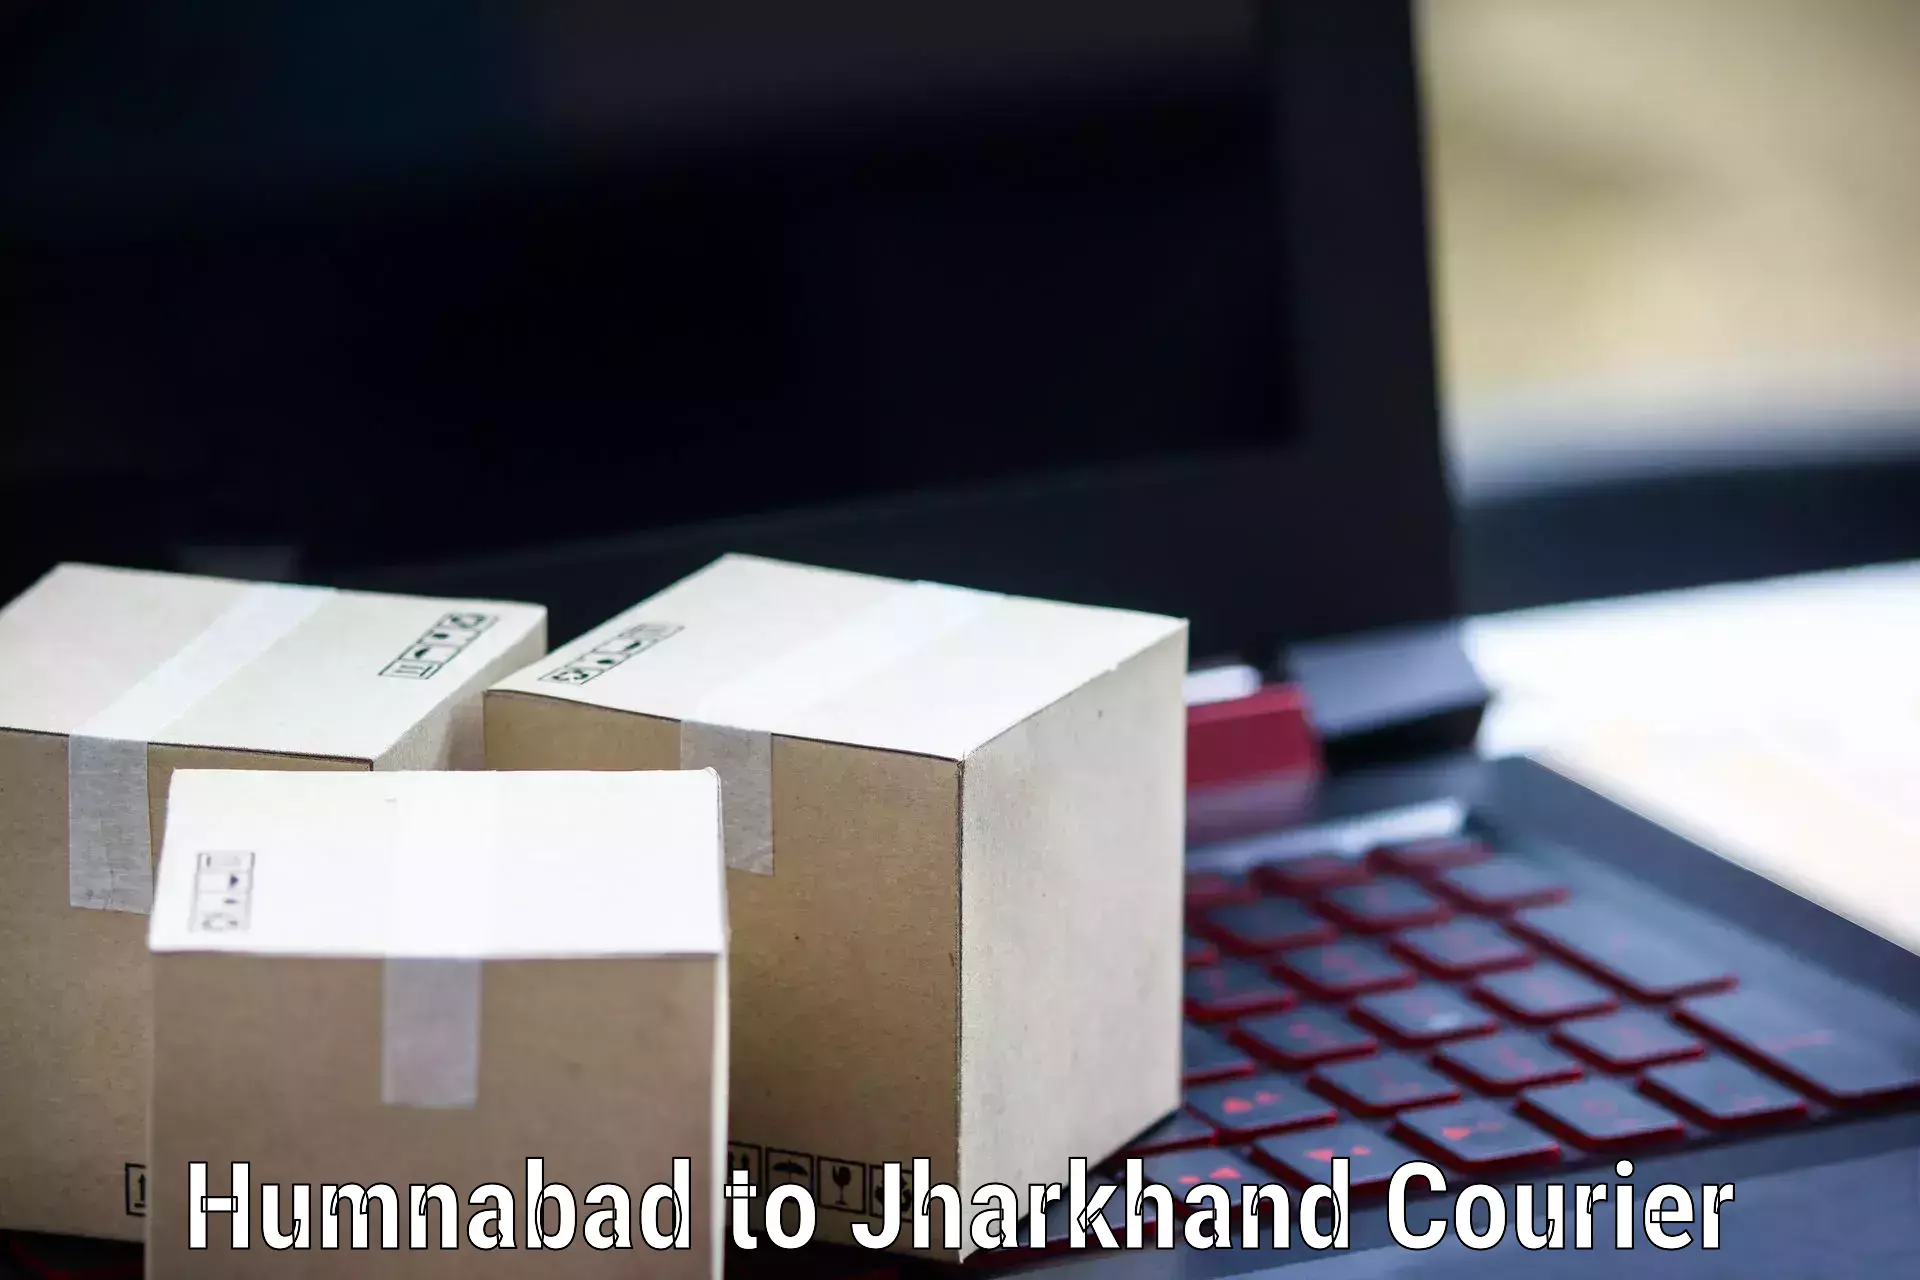 International parcel service Humnabad to Latehar